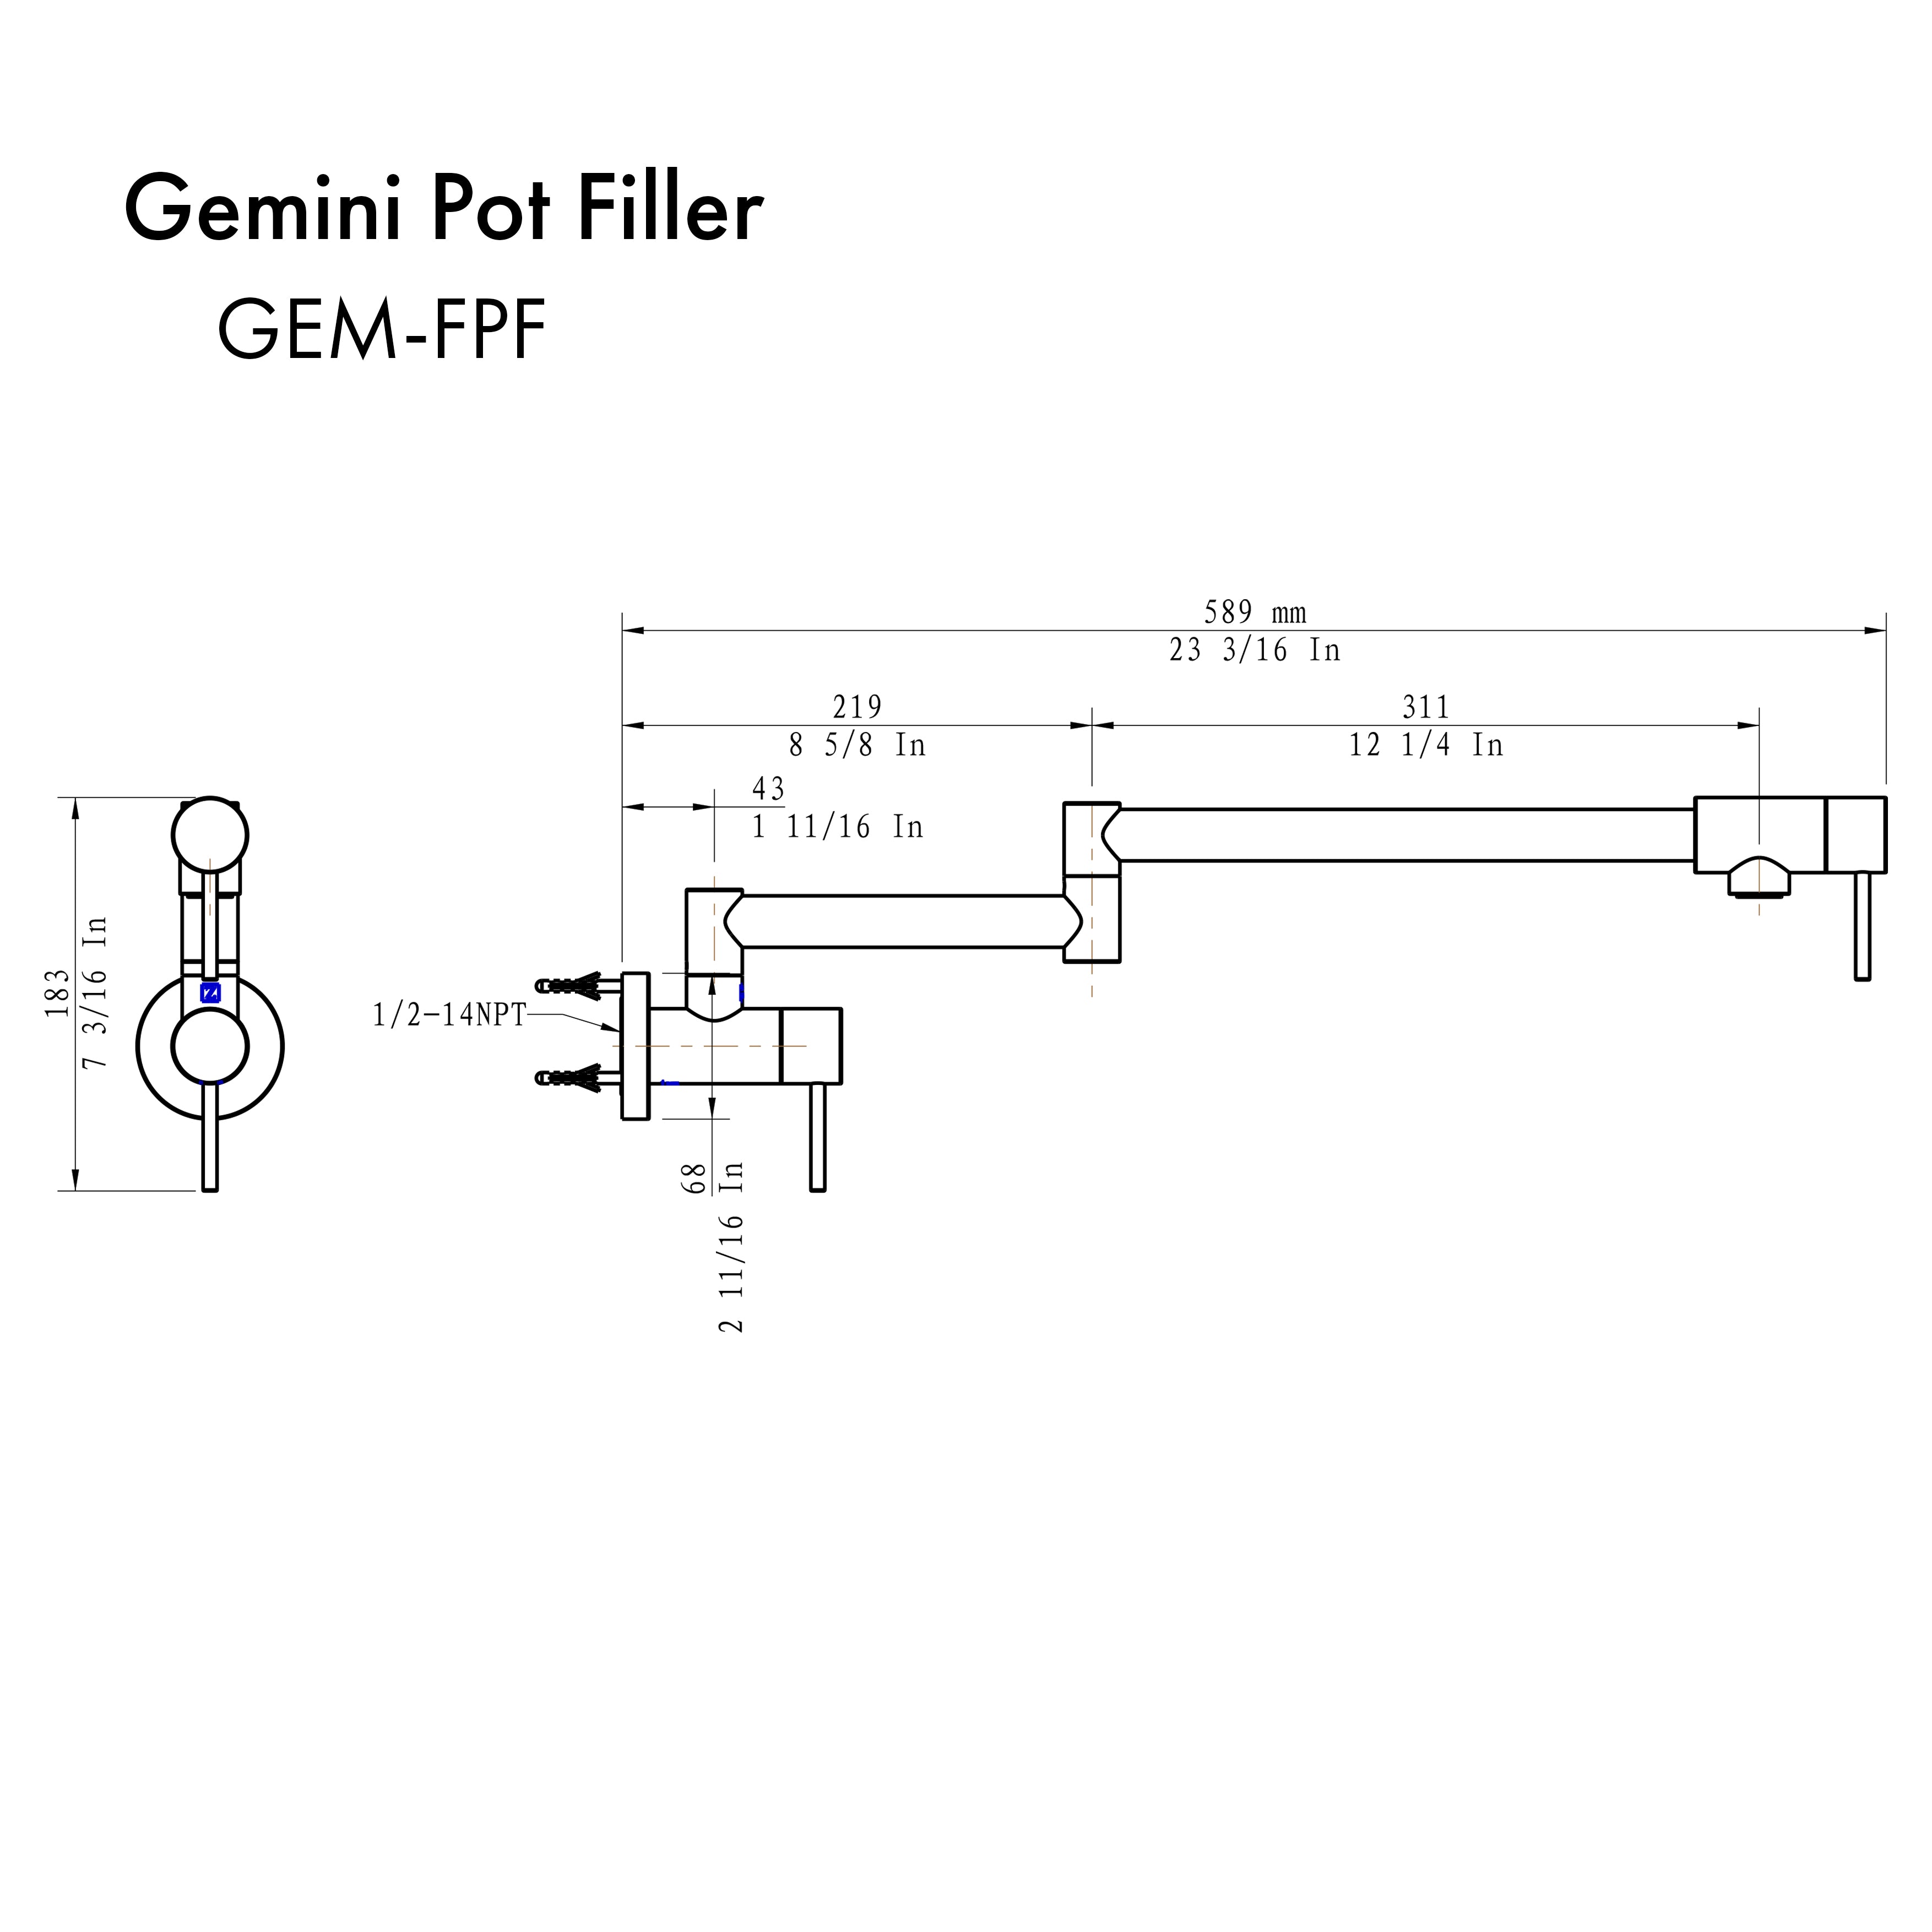 ZLINE Gemini Pot Filler with Color Options (GEM-FPF-PG)